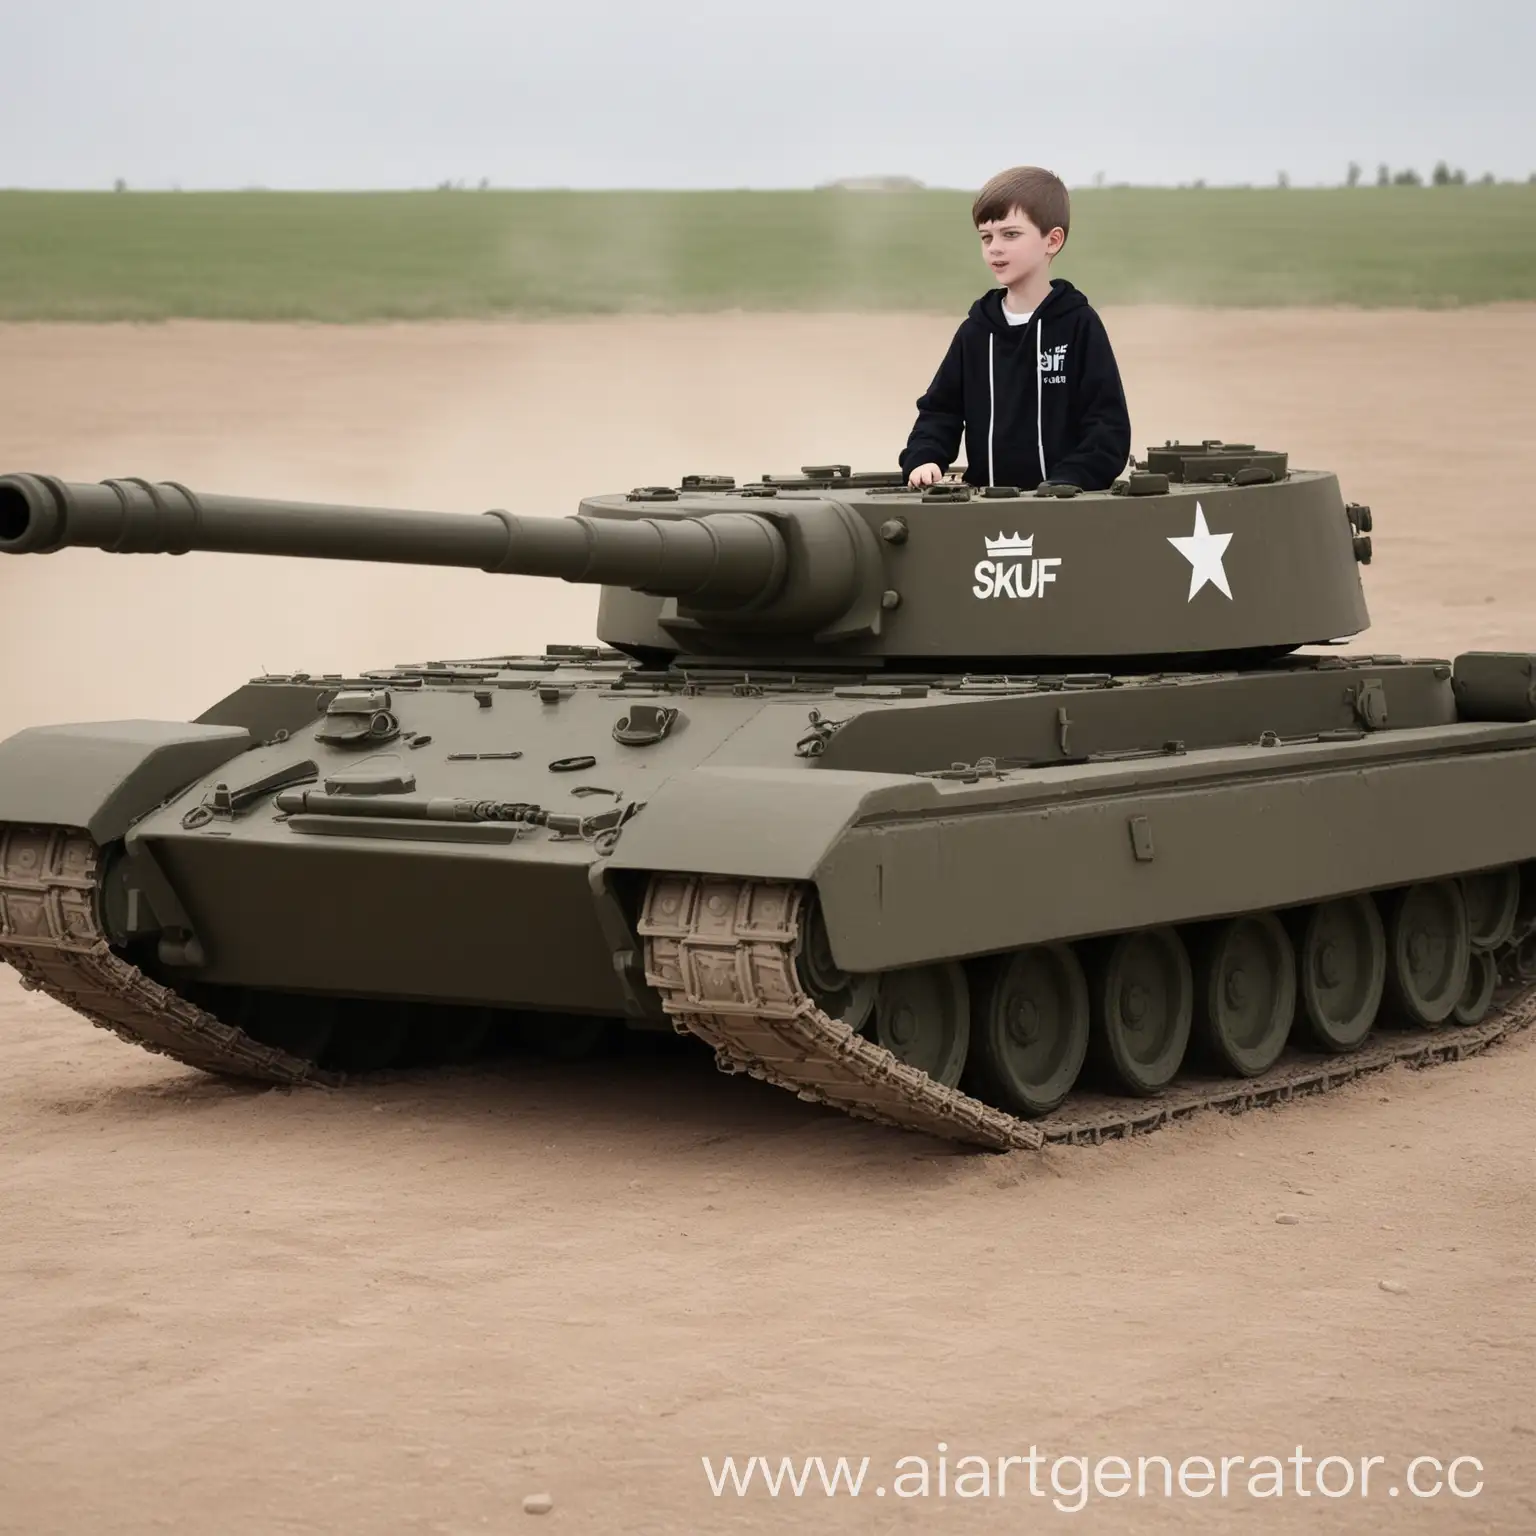 двенадцатилетний мальчик скуф играет в танки